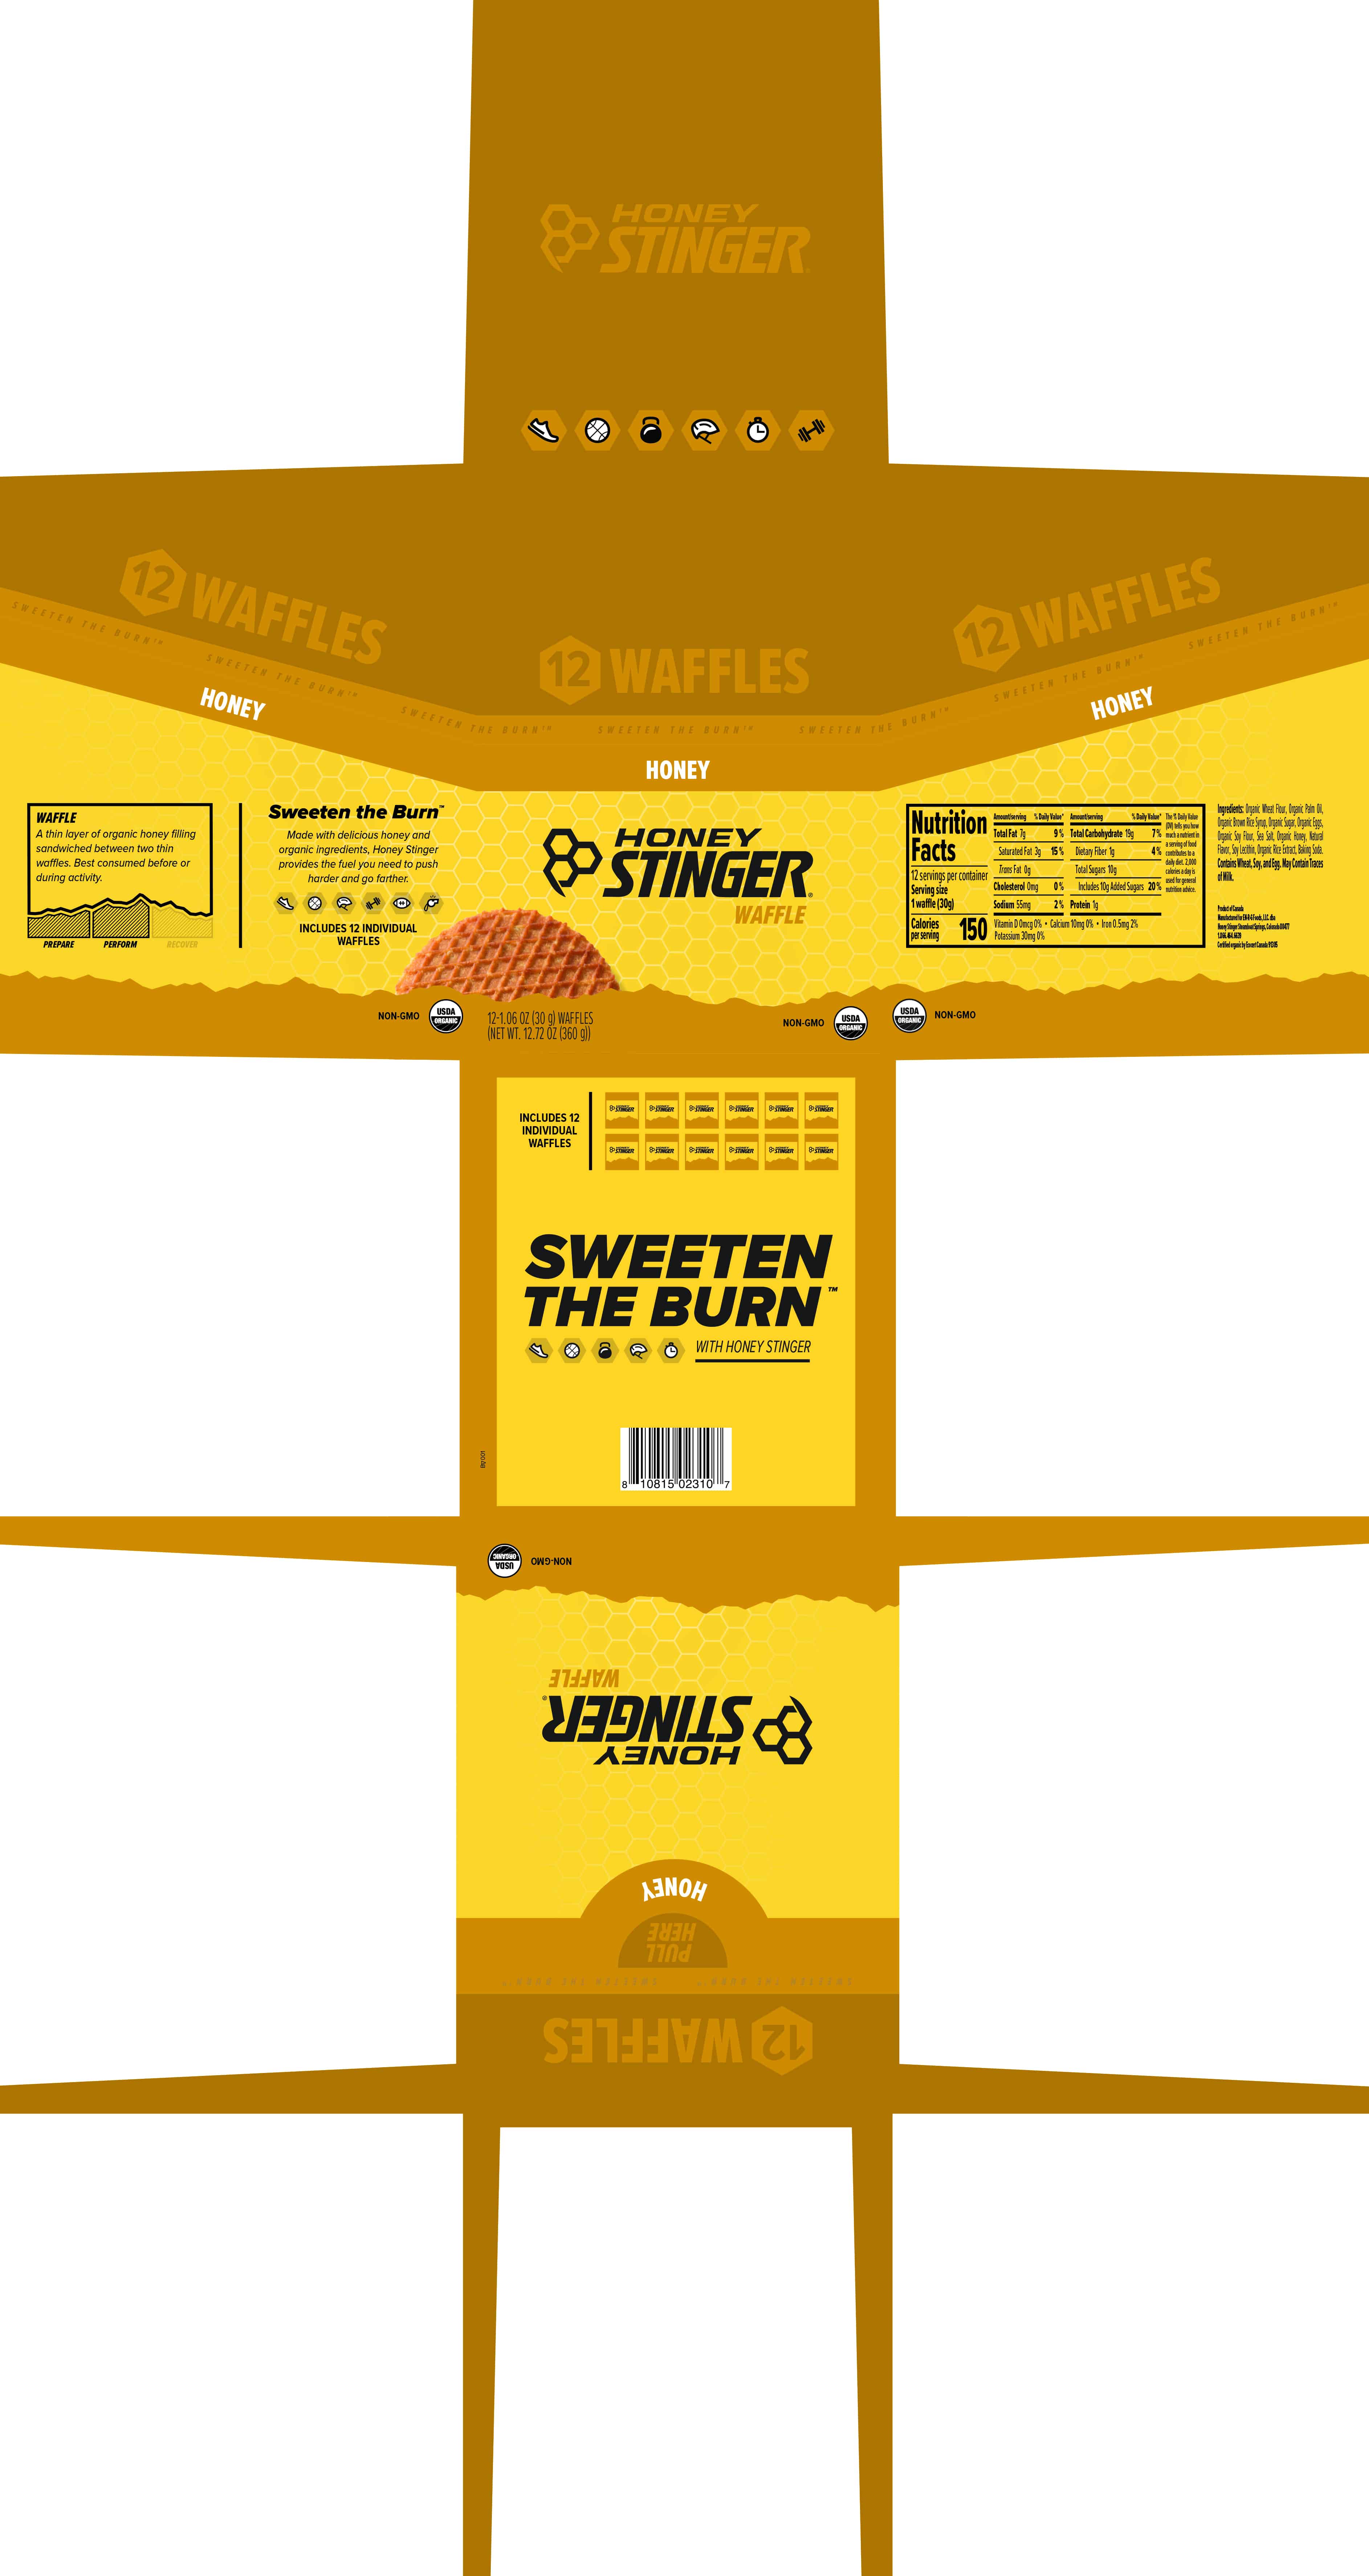 Honey Stinger Waffle Caddy Honey 8 innerpacks per case 12.8 oz Product Label